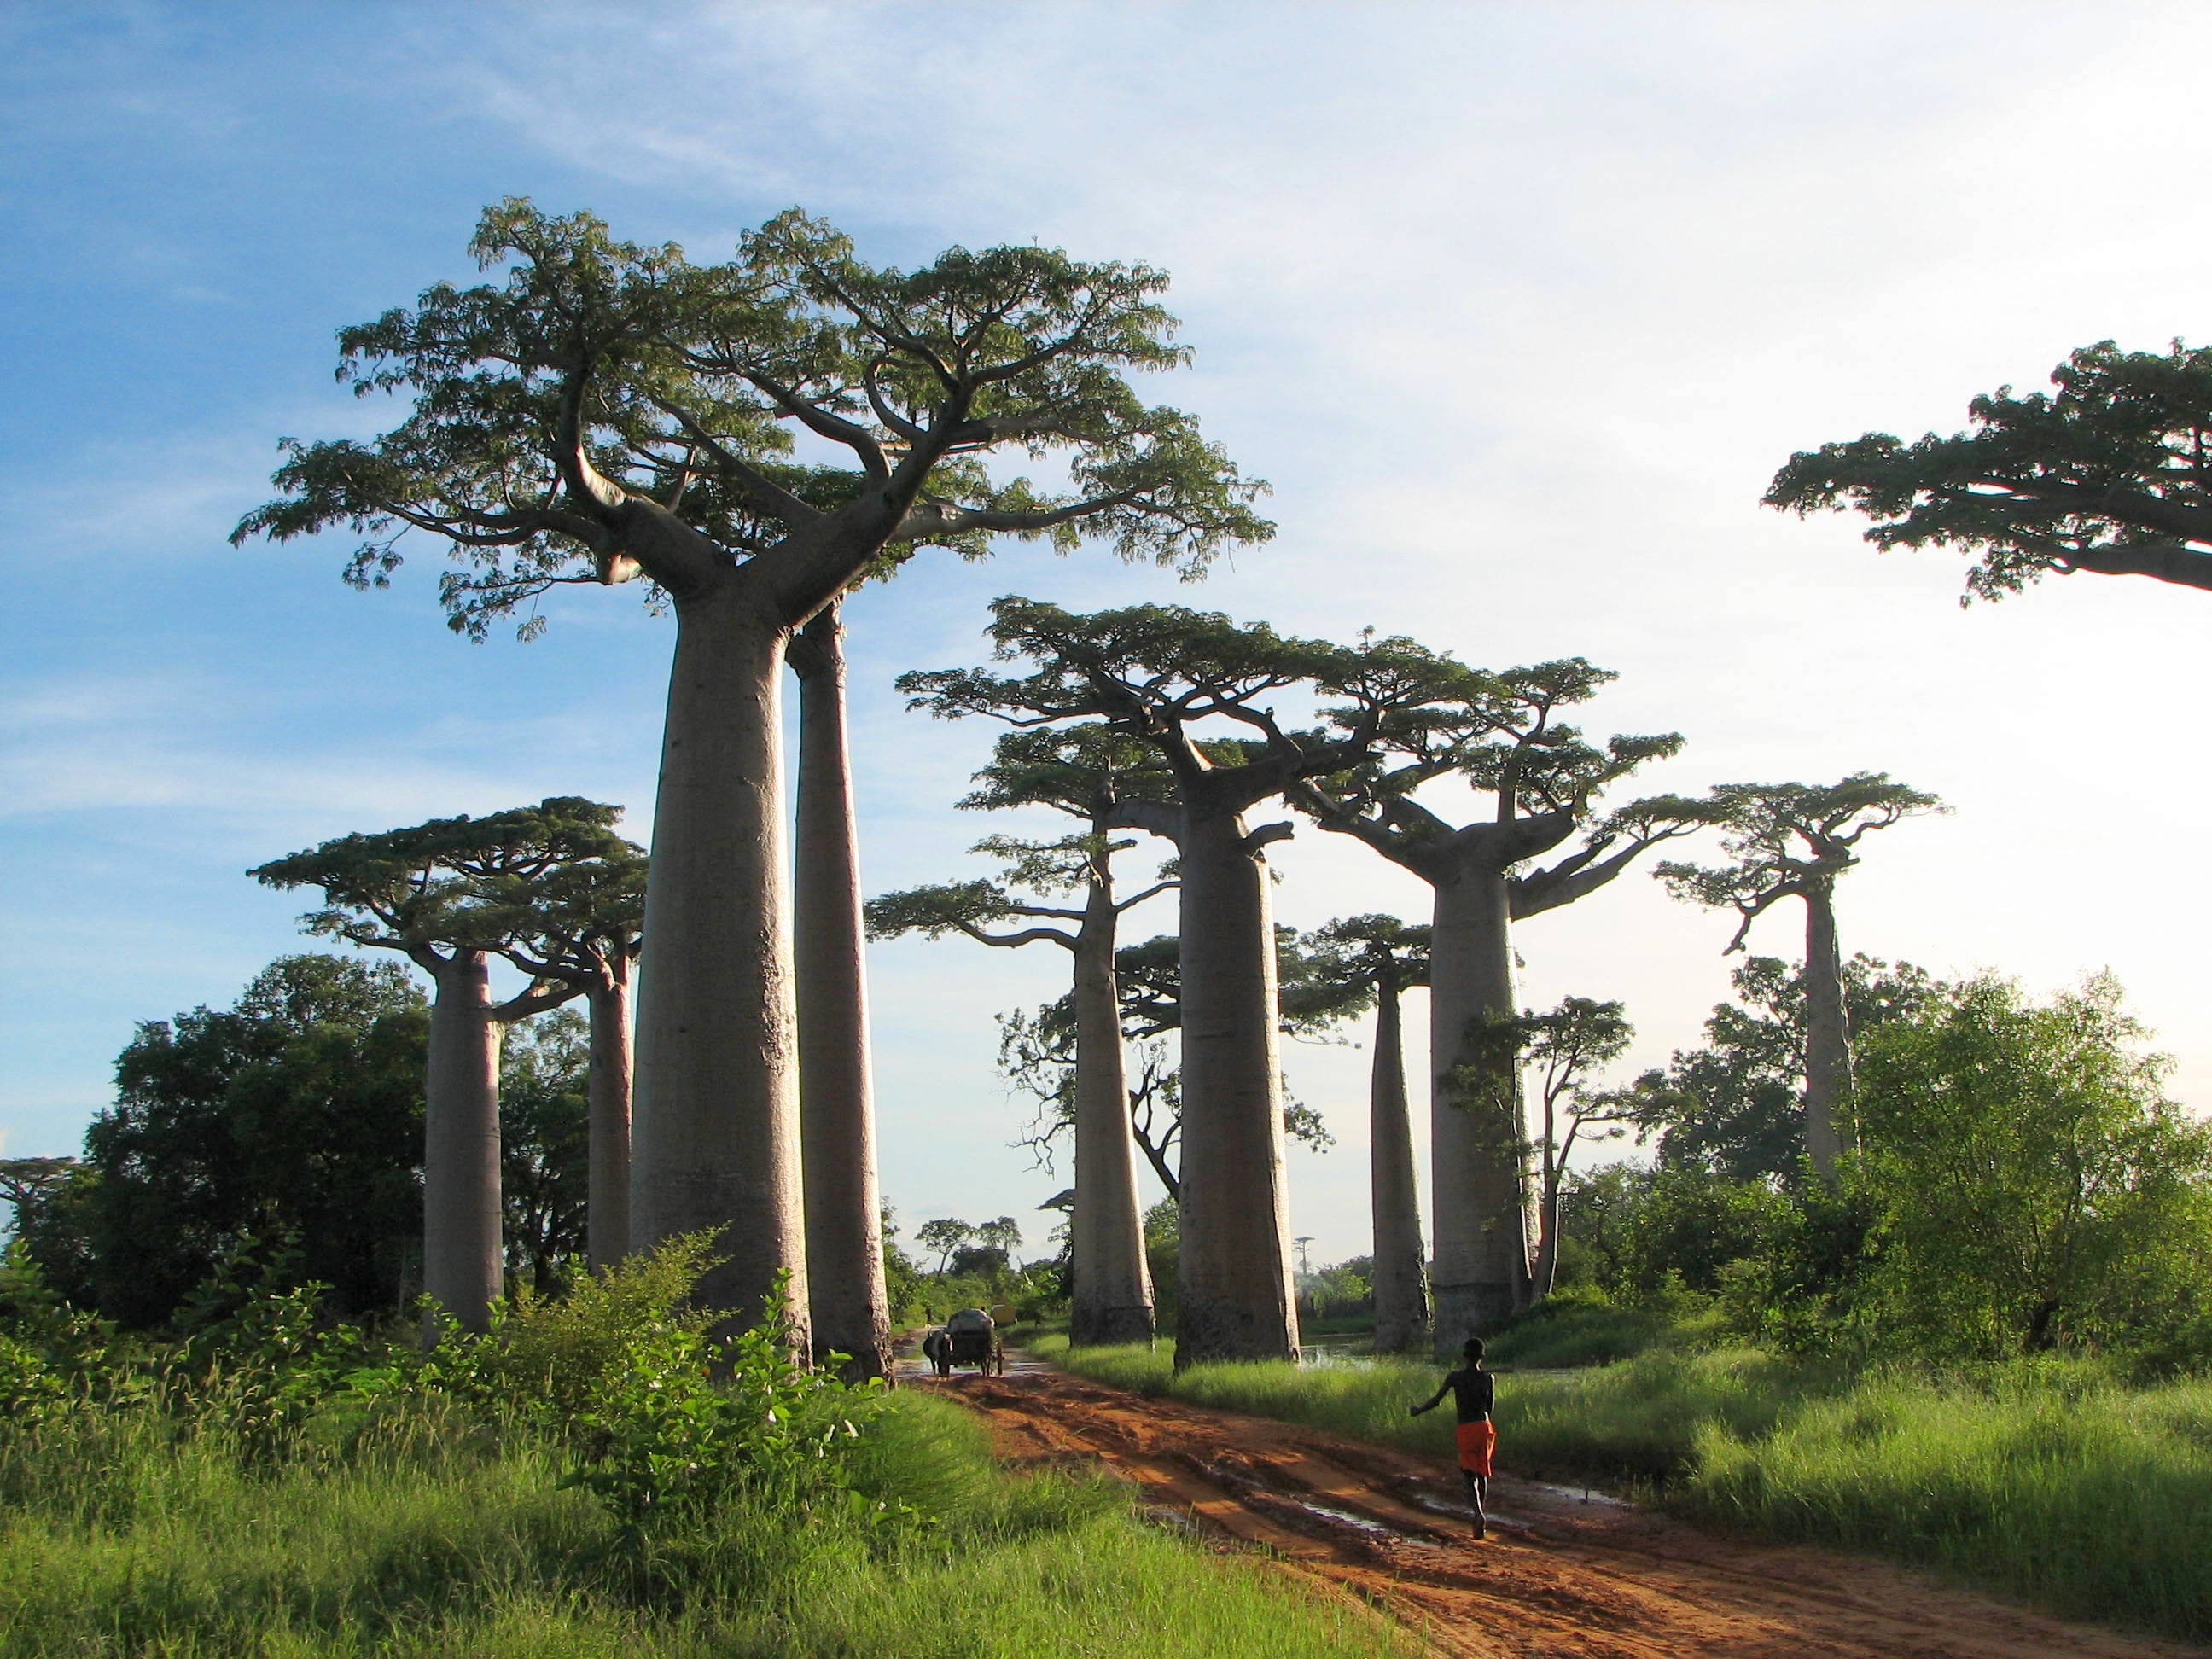 バオバブ Baobab 英語で覚える植物名 植物の英語名を知るブログ 樹木 草花 ハーブ 野菜 果物 ガーデニング